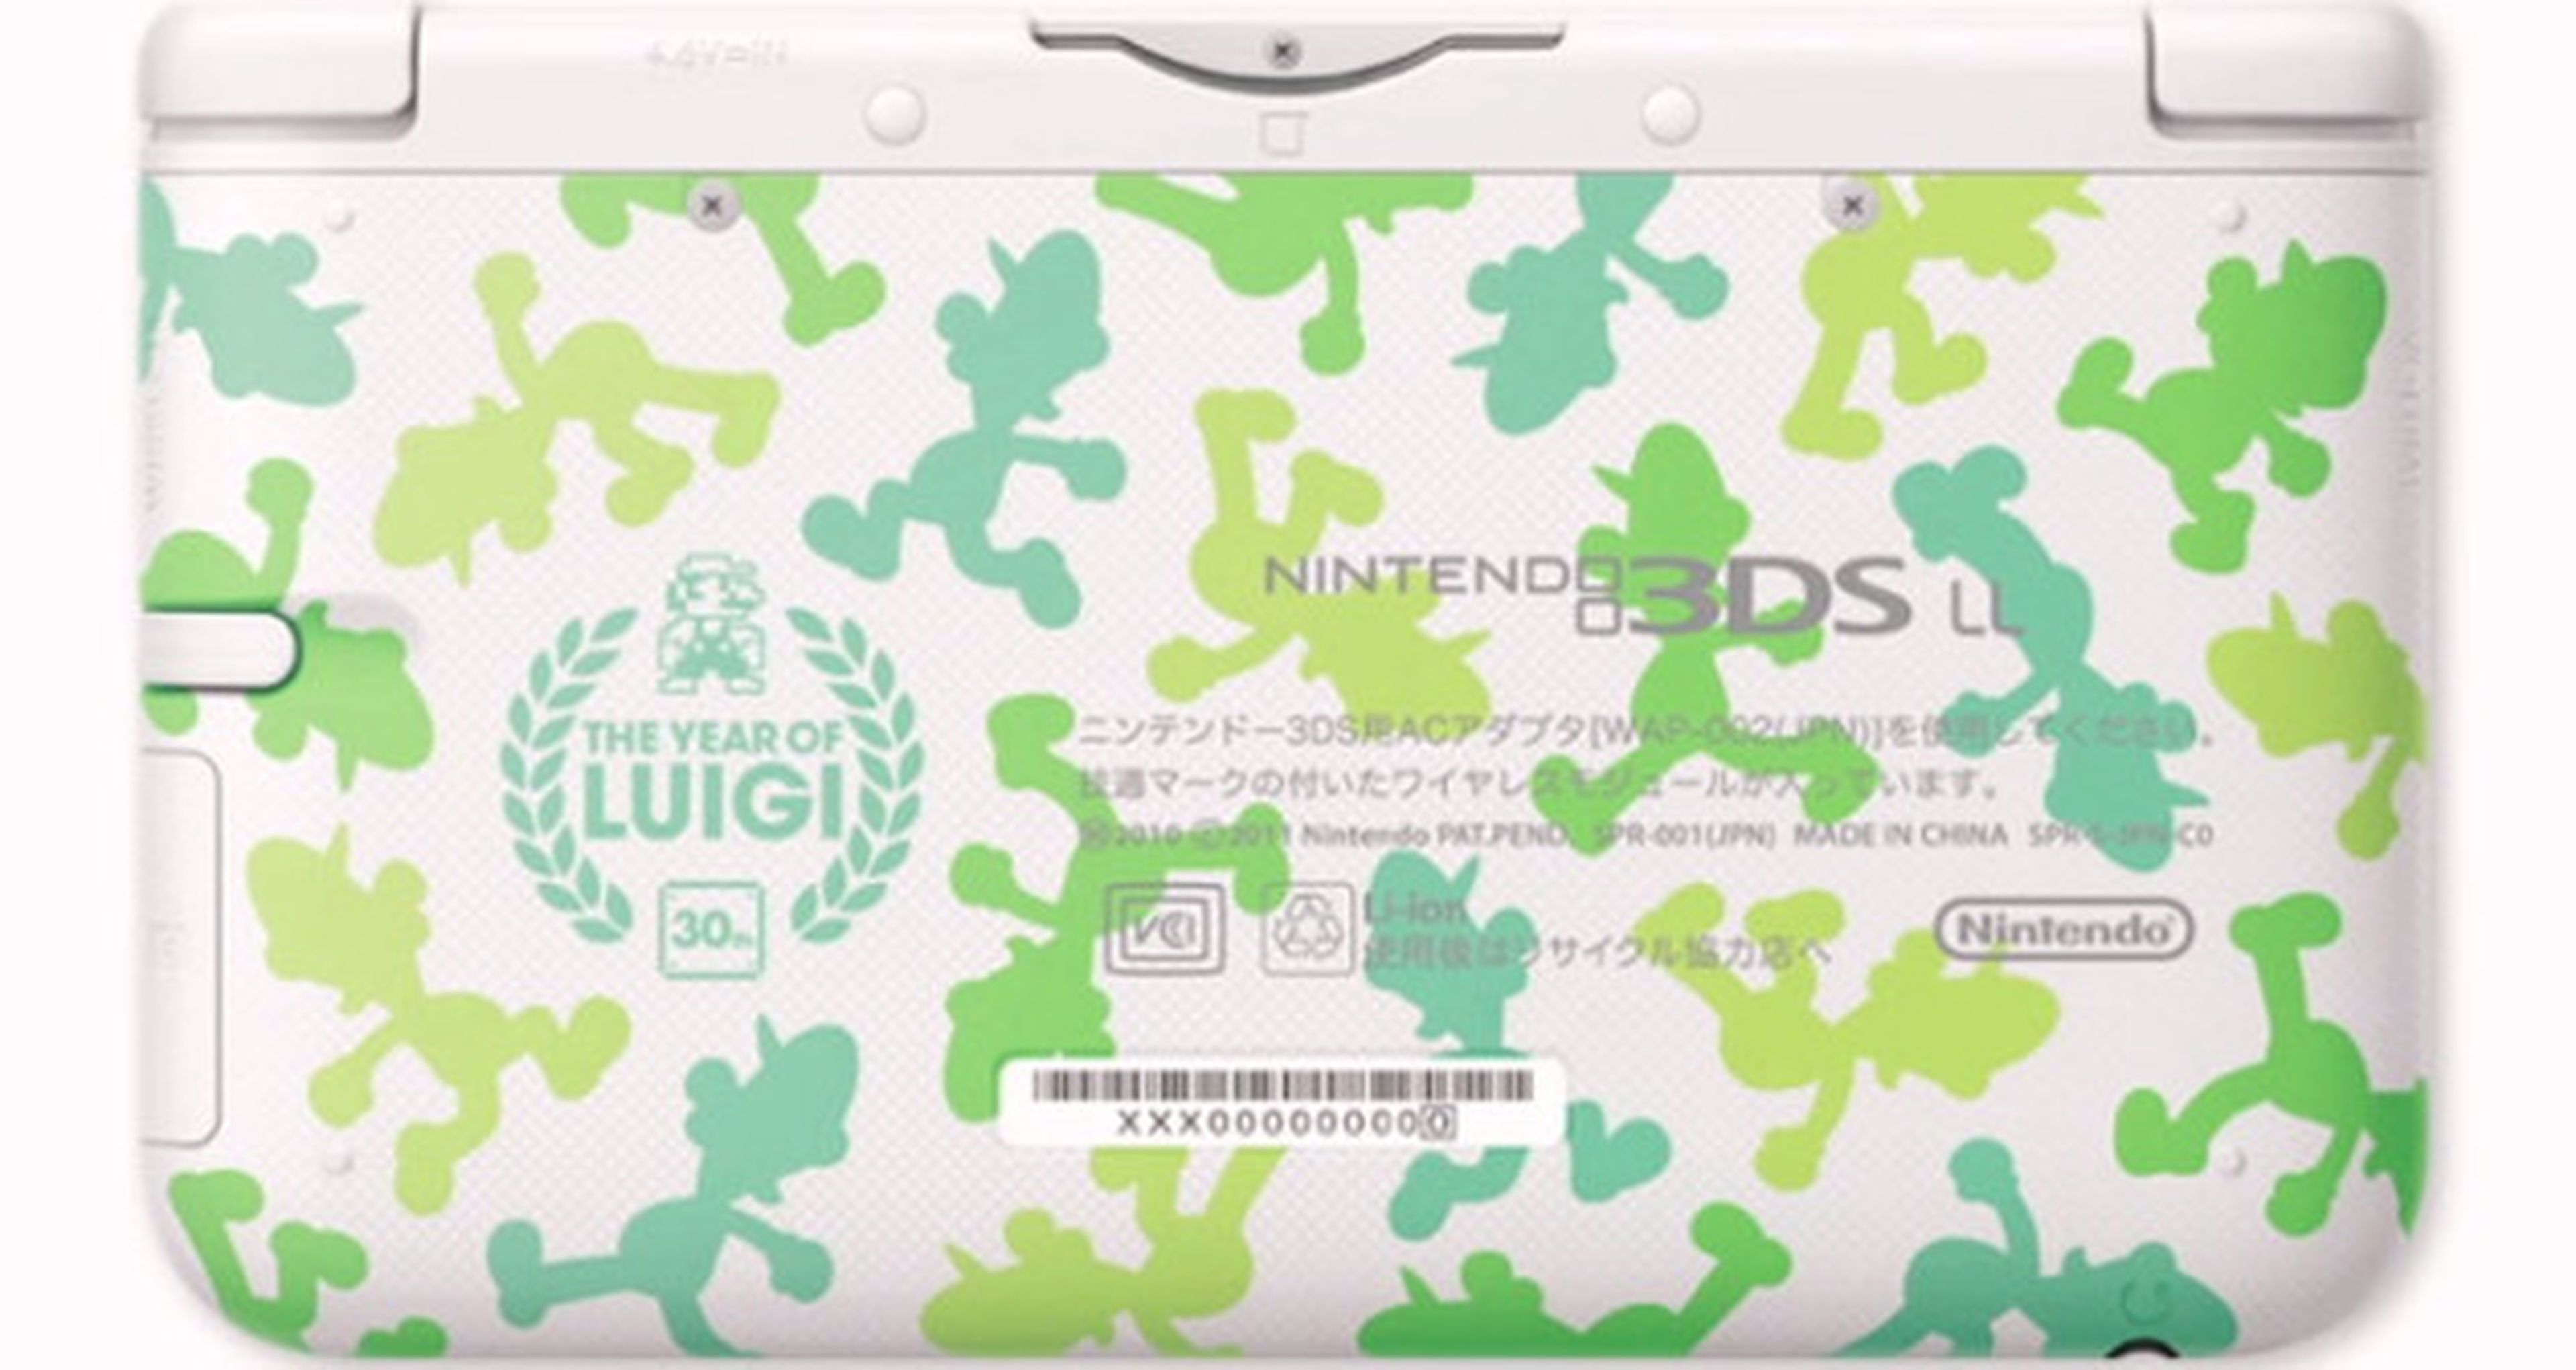 Invitado sorpresa en la 3DS XL del Año de Luigi